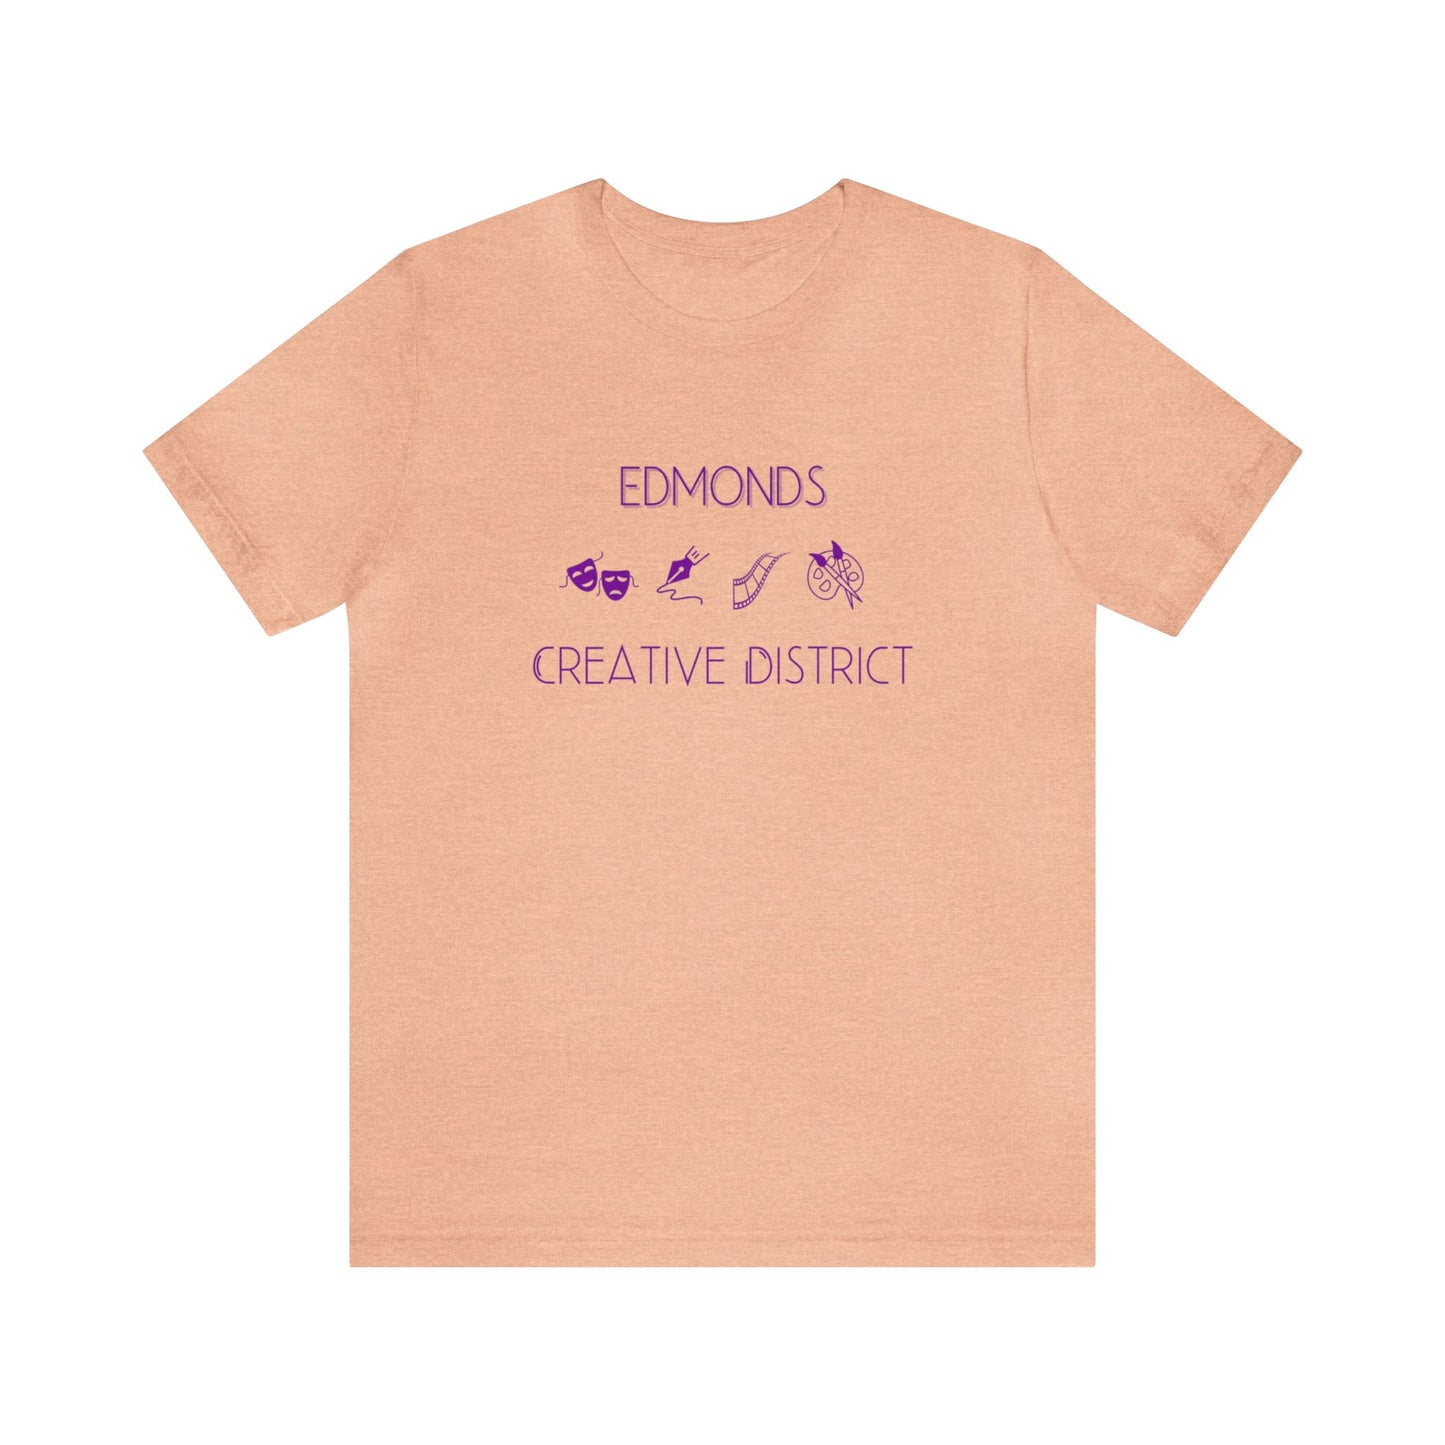 Edmonds Creative District T-shirt